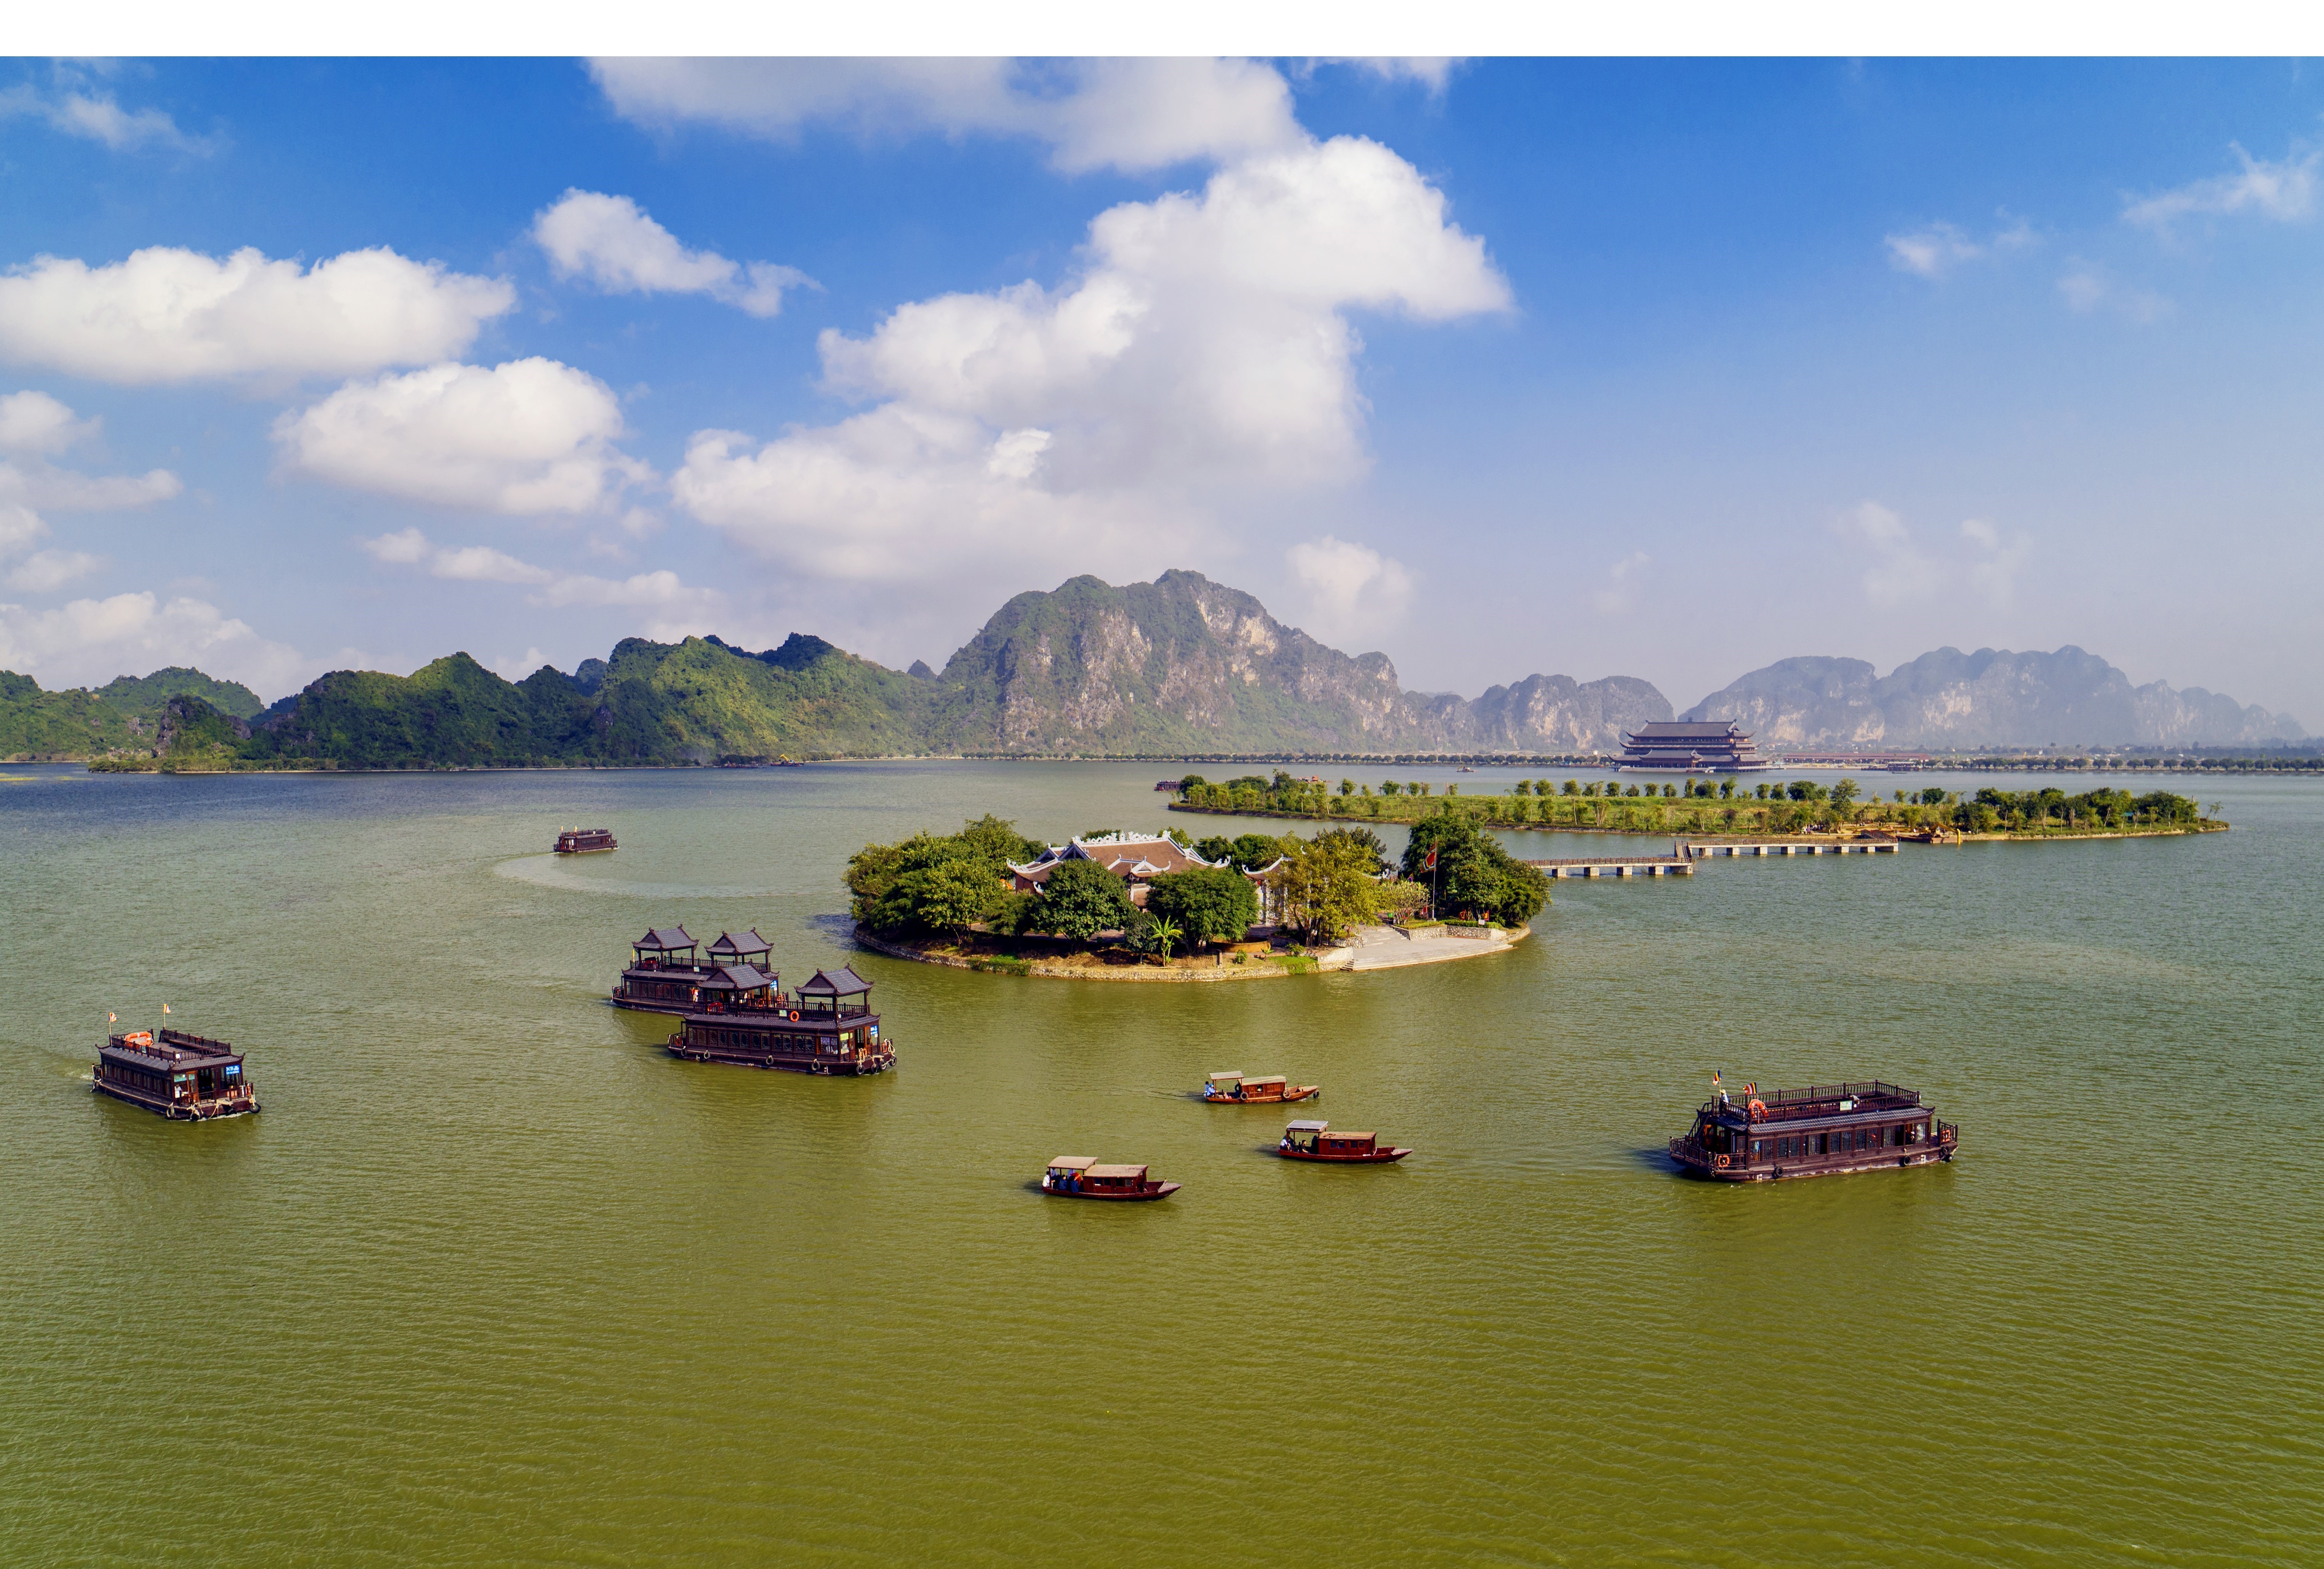                                  旅游船带游客游览占地面积达逾600公顷的三祝湖。图自越通社